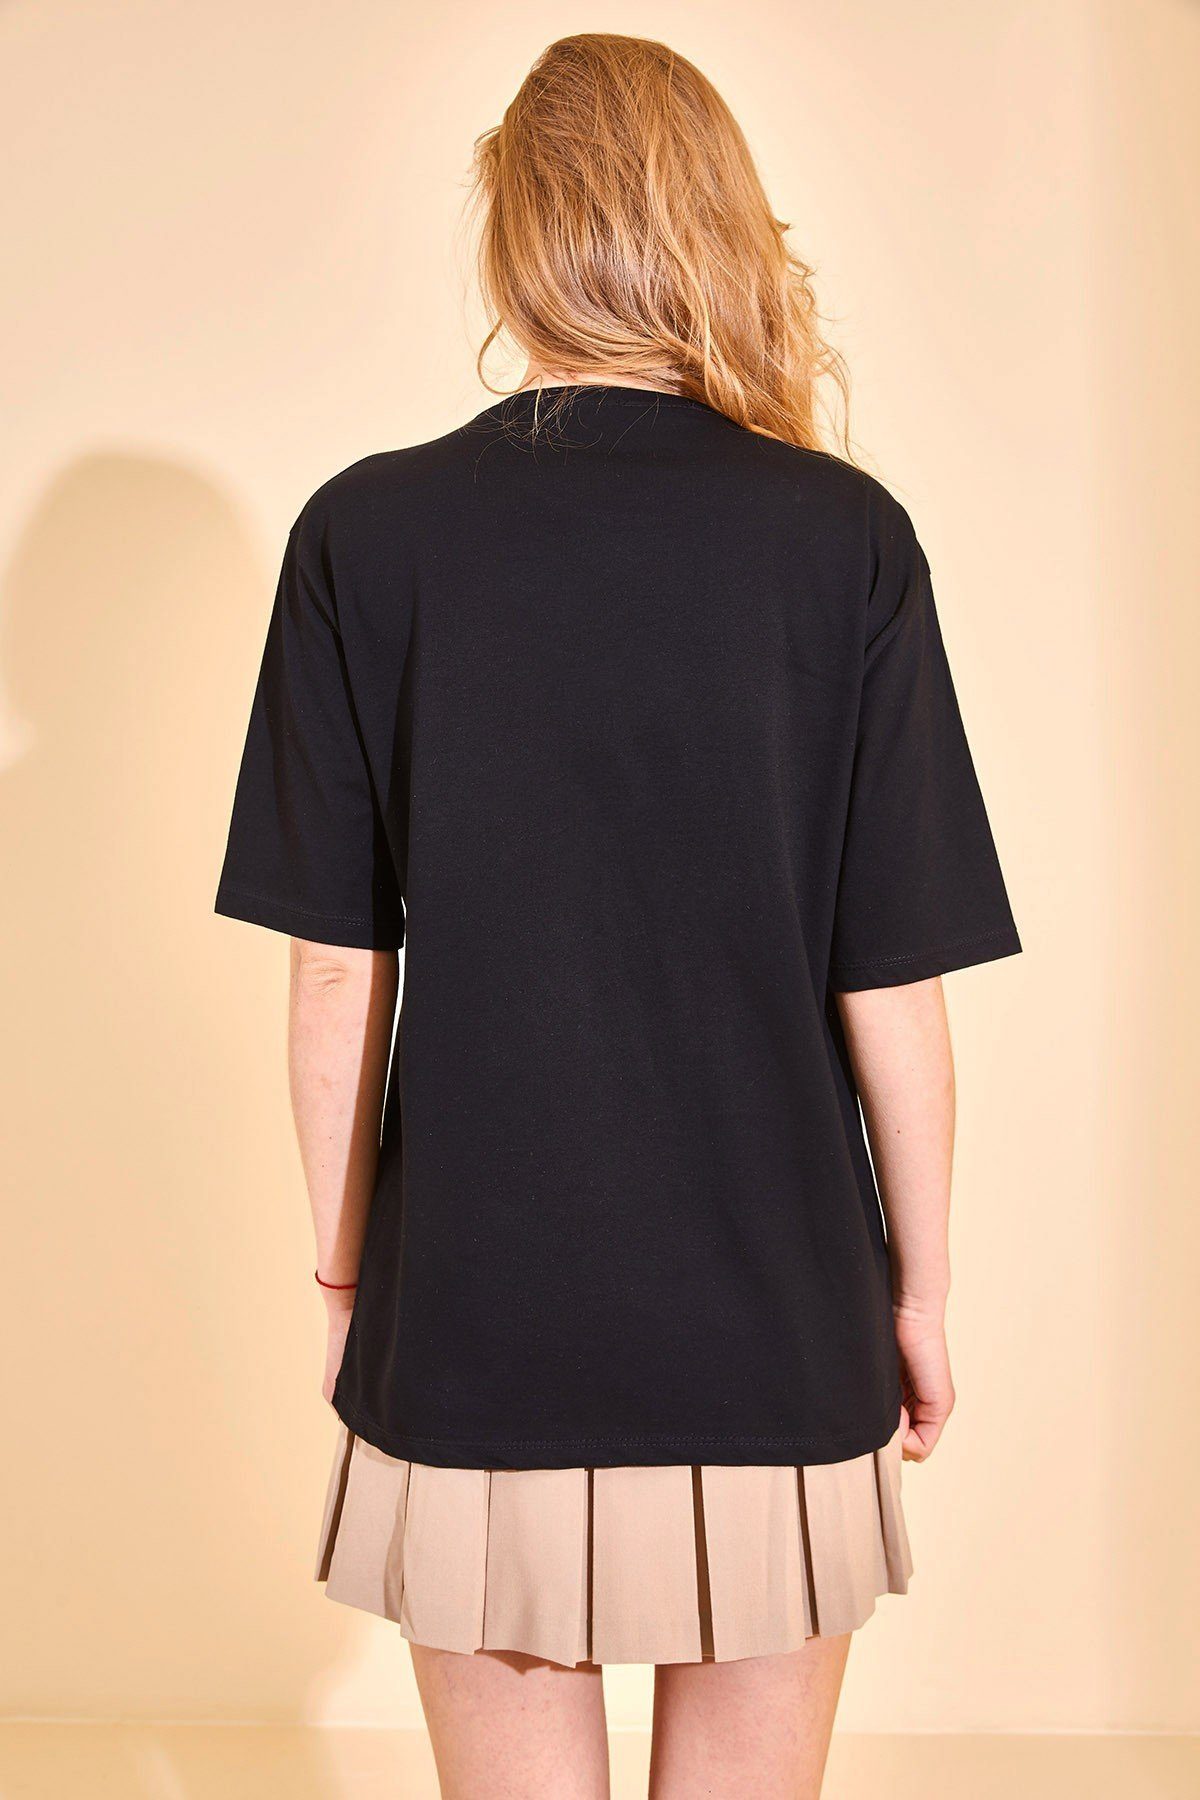 30% Jumeon Polyester damen, Größe 70% Schwarz, M / XHN, T-Shirt X127001 Baumwolle